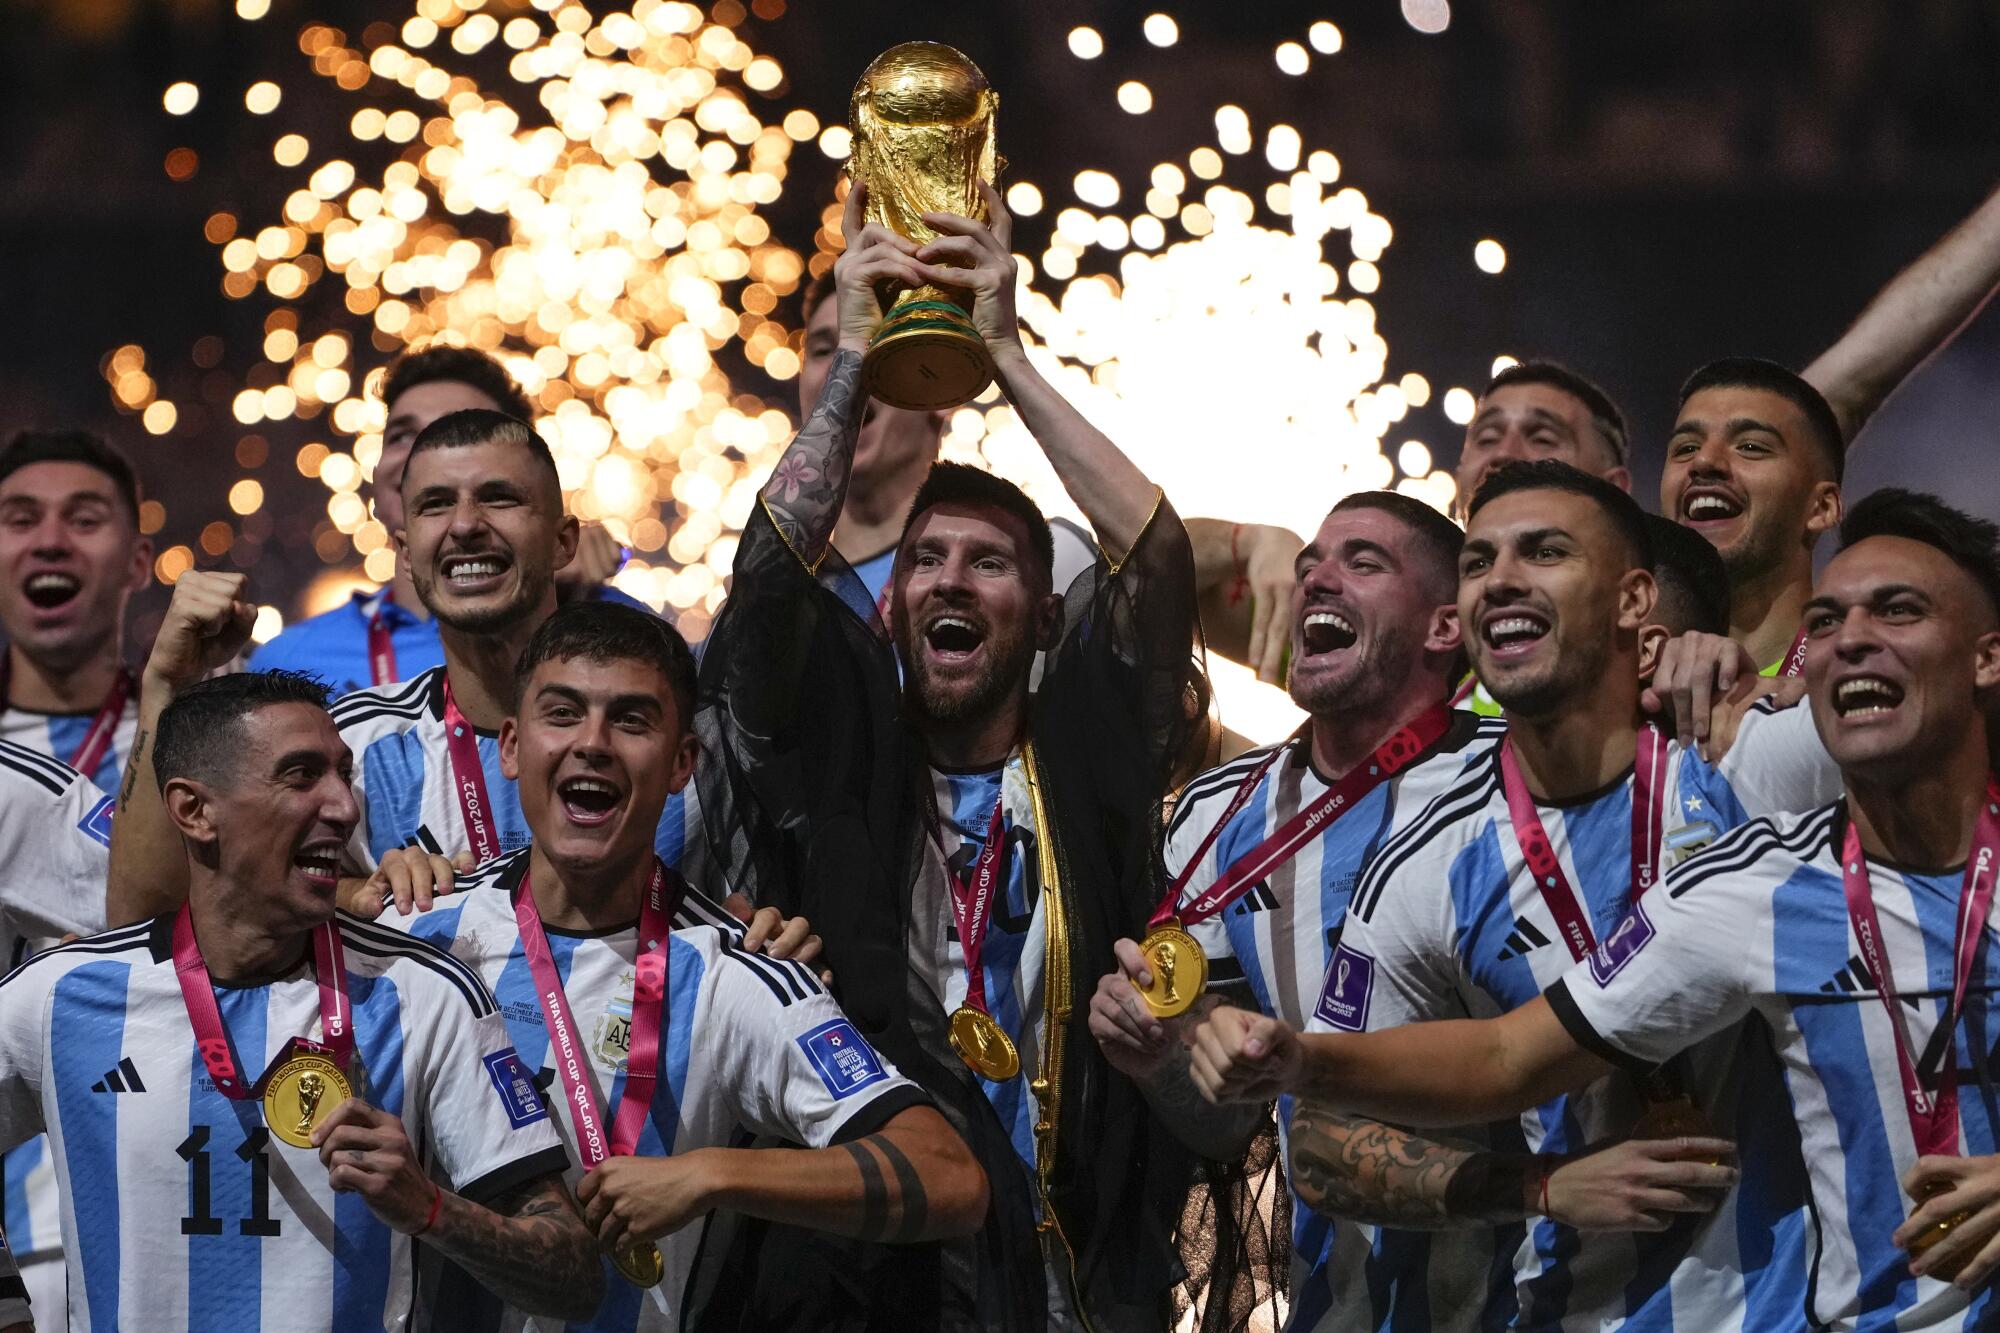 Argentina Goalkeeper jersey WC Final 2022